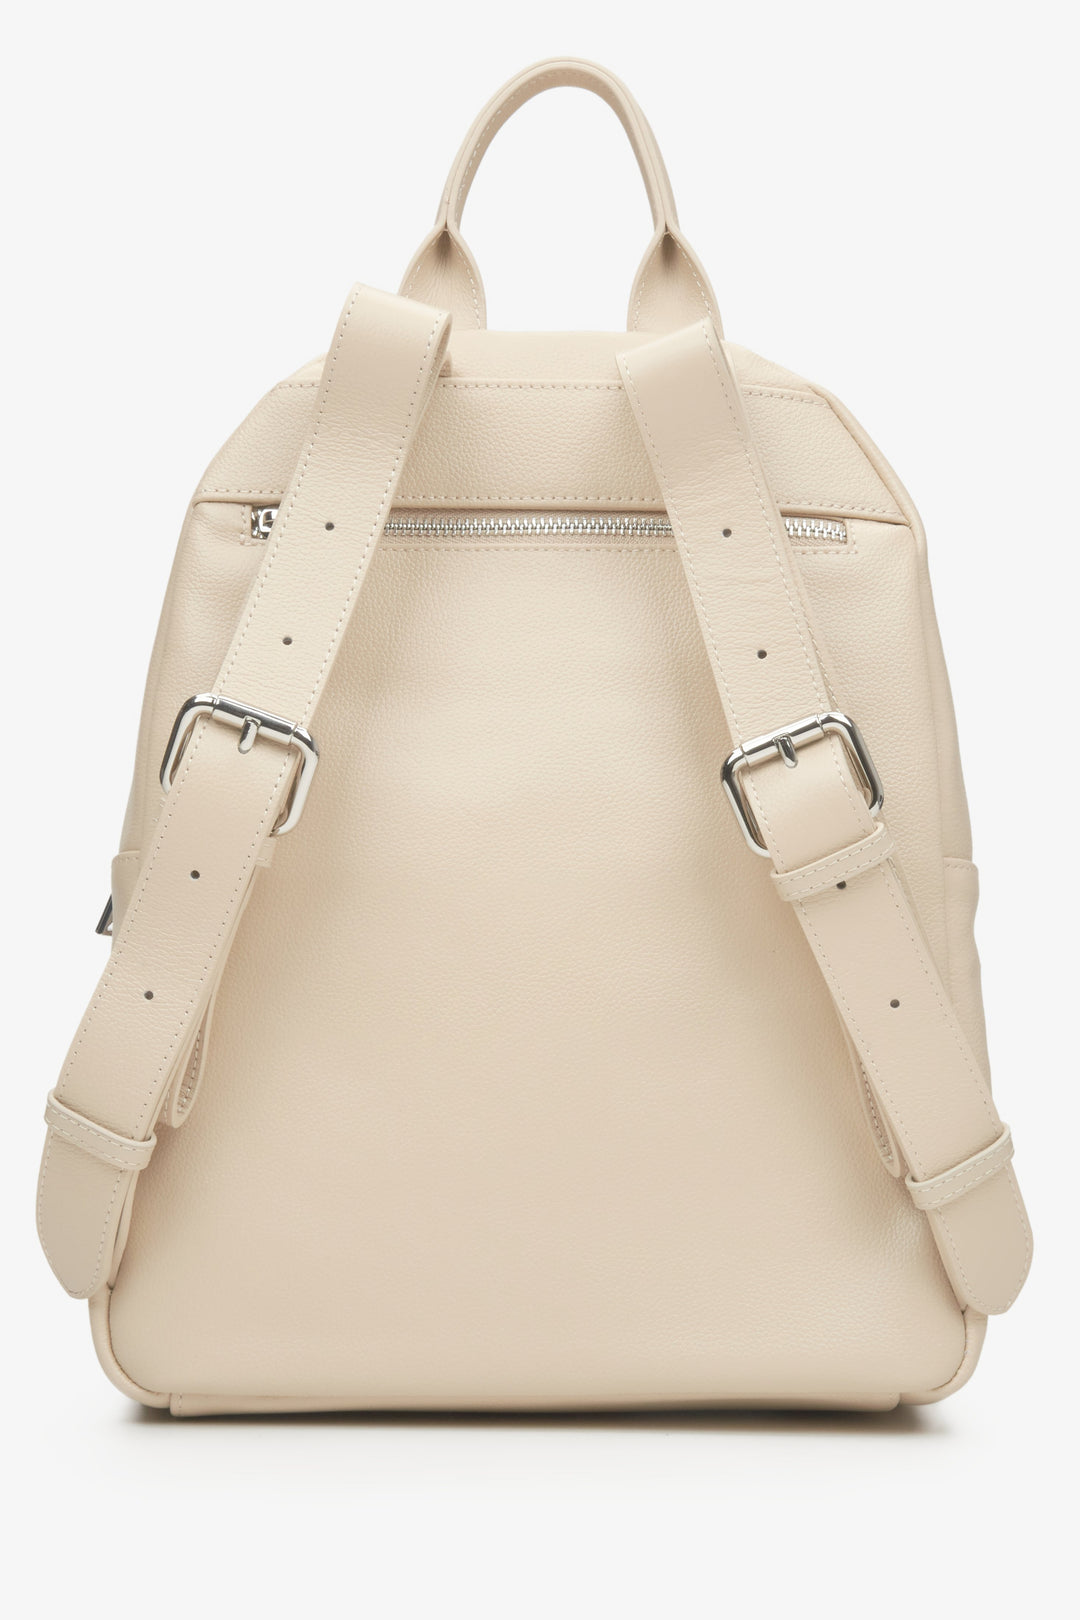 Women's light beige leather backpack by Estro - reverse side.